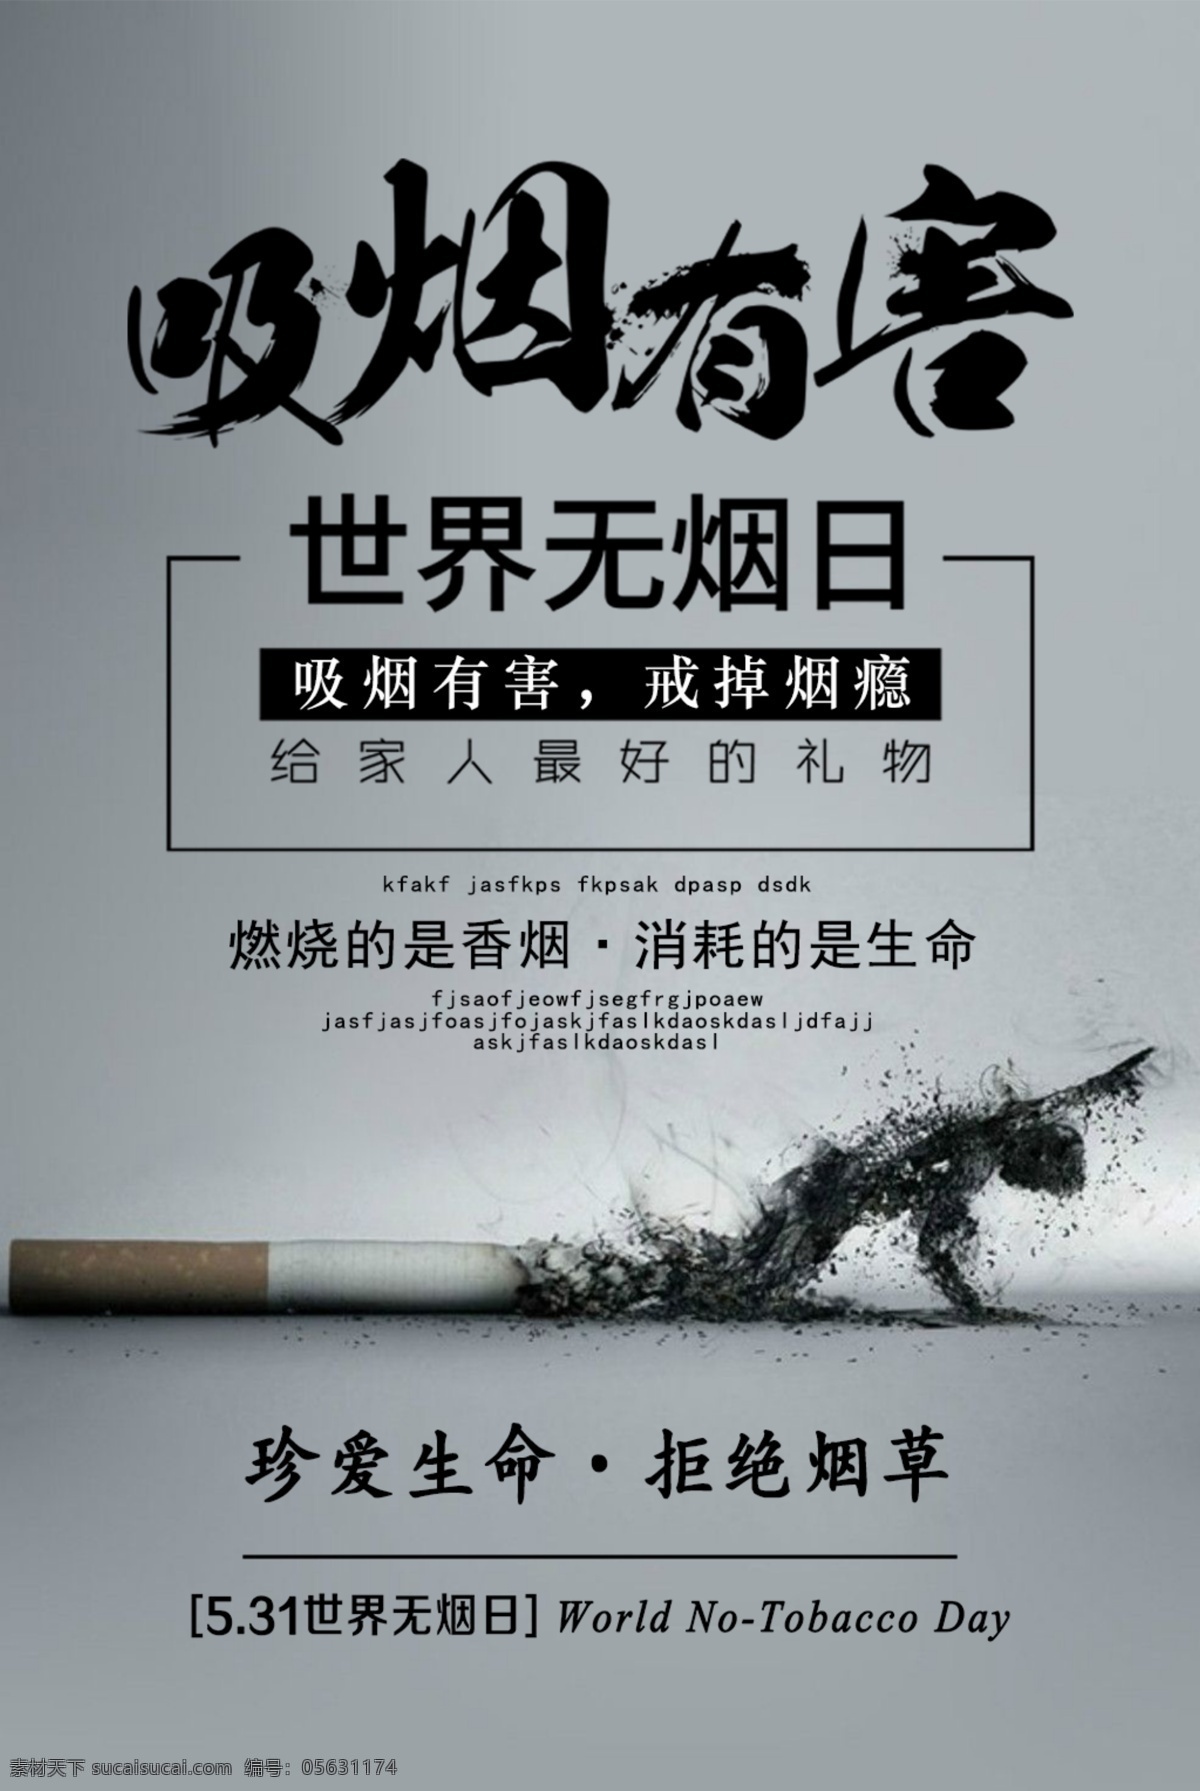 世界 无烟日 禁烟 戒烟 珍爱生命 世界无烟日 吸烟有害